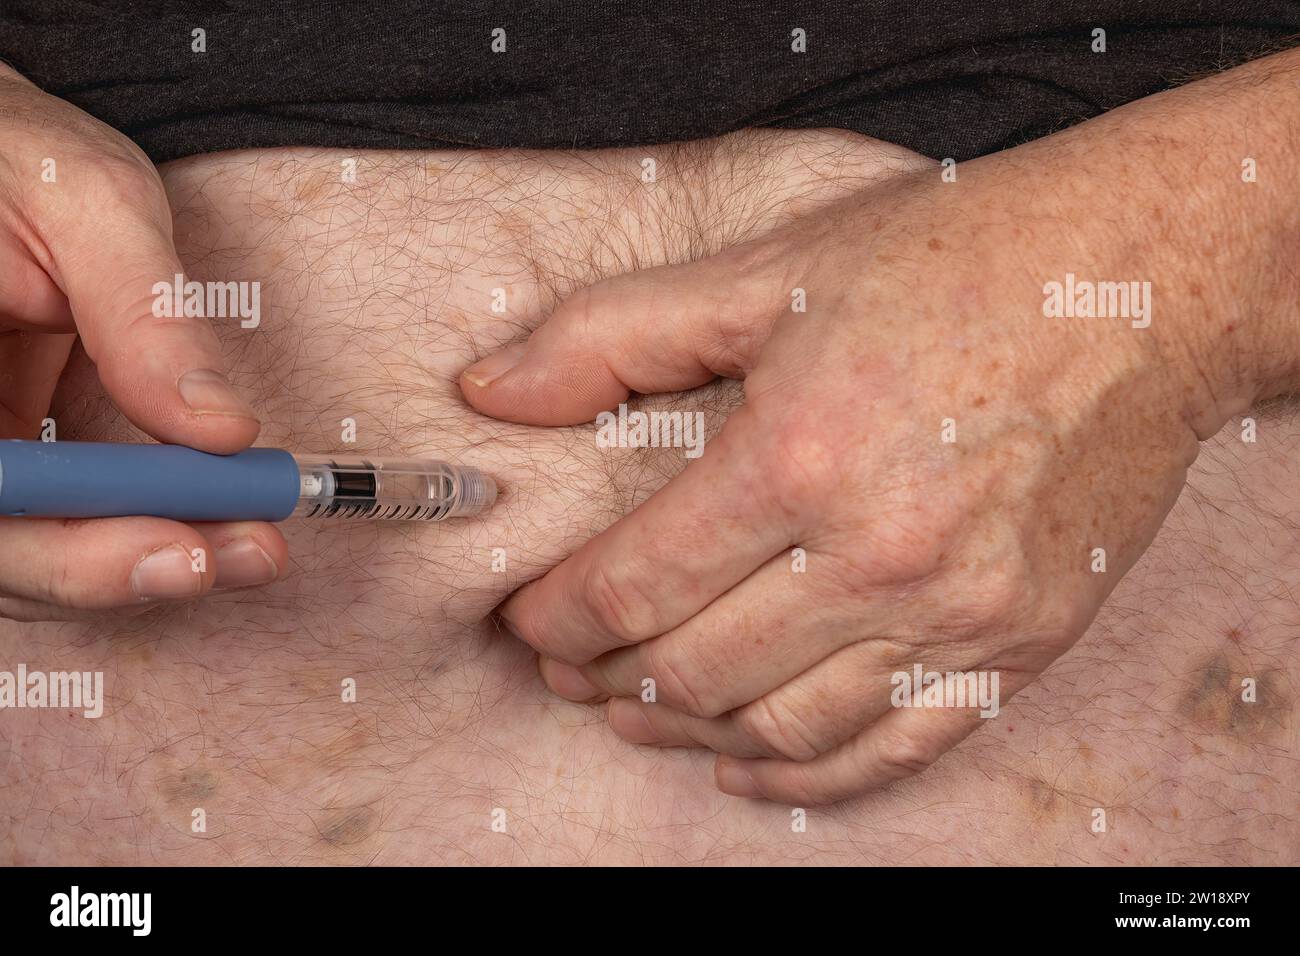 Diabetesmanagement: Injektion von Insulin in den Bauch mit Insulin Pen Stockfoto